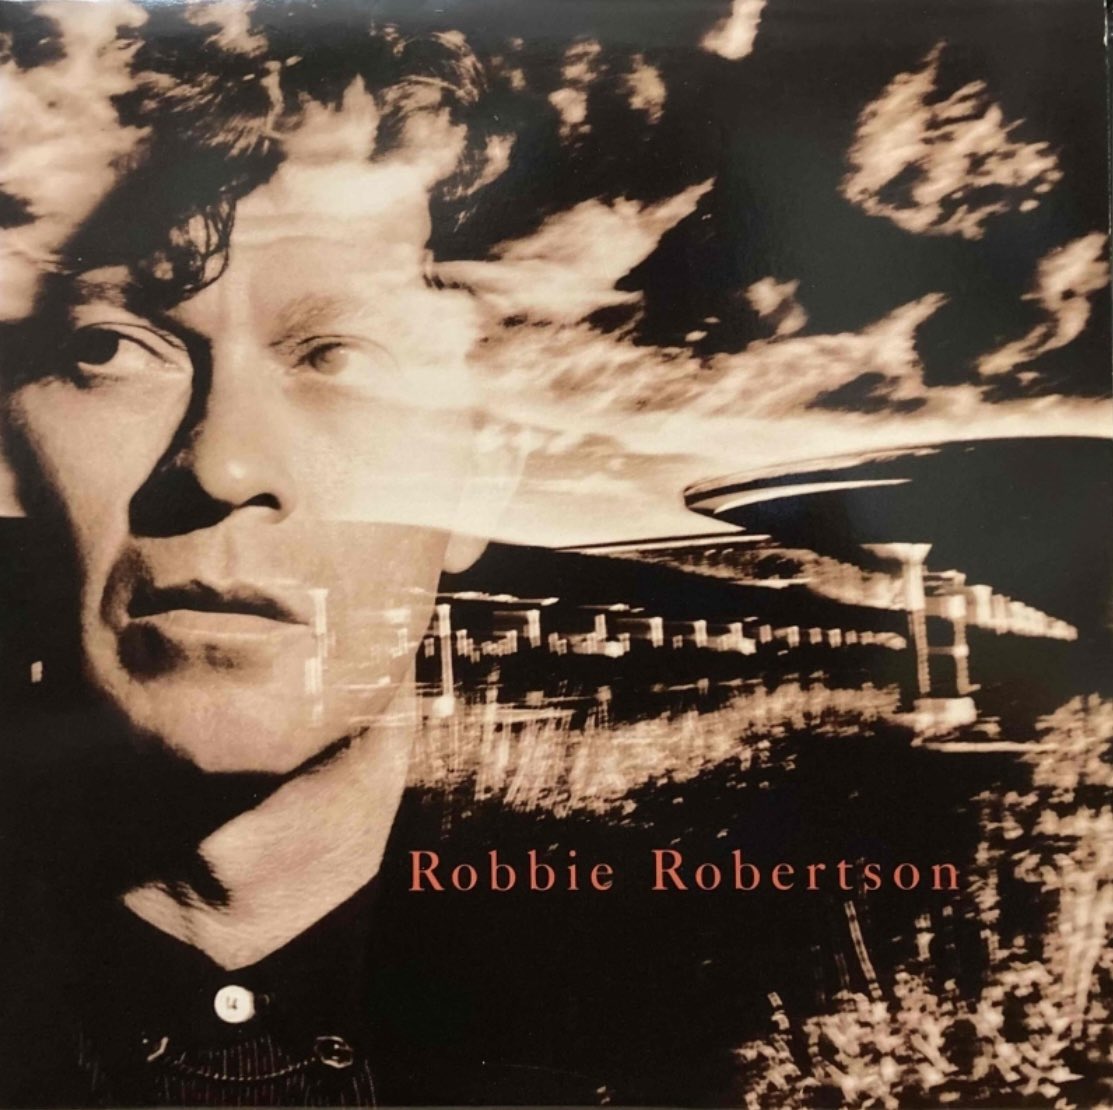 【邦題復活してよー】
#RobbieRobertson  #daidai 
Robbie Robertson / Somewhere Down The Crazy River（1987）
邦題：クレイジー・リバーのどこかで

直邦題ですが、何より歌詞が『詩』
一本の映画になります👍
だからこそなのか、MV監督は何とマーティン・スコセッシ‼️👇

youtu.be/4KP9PNSUME4?si…